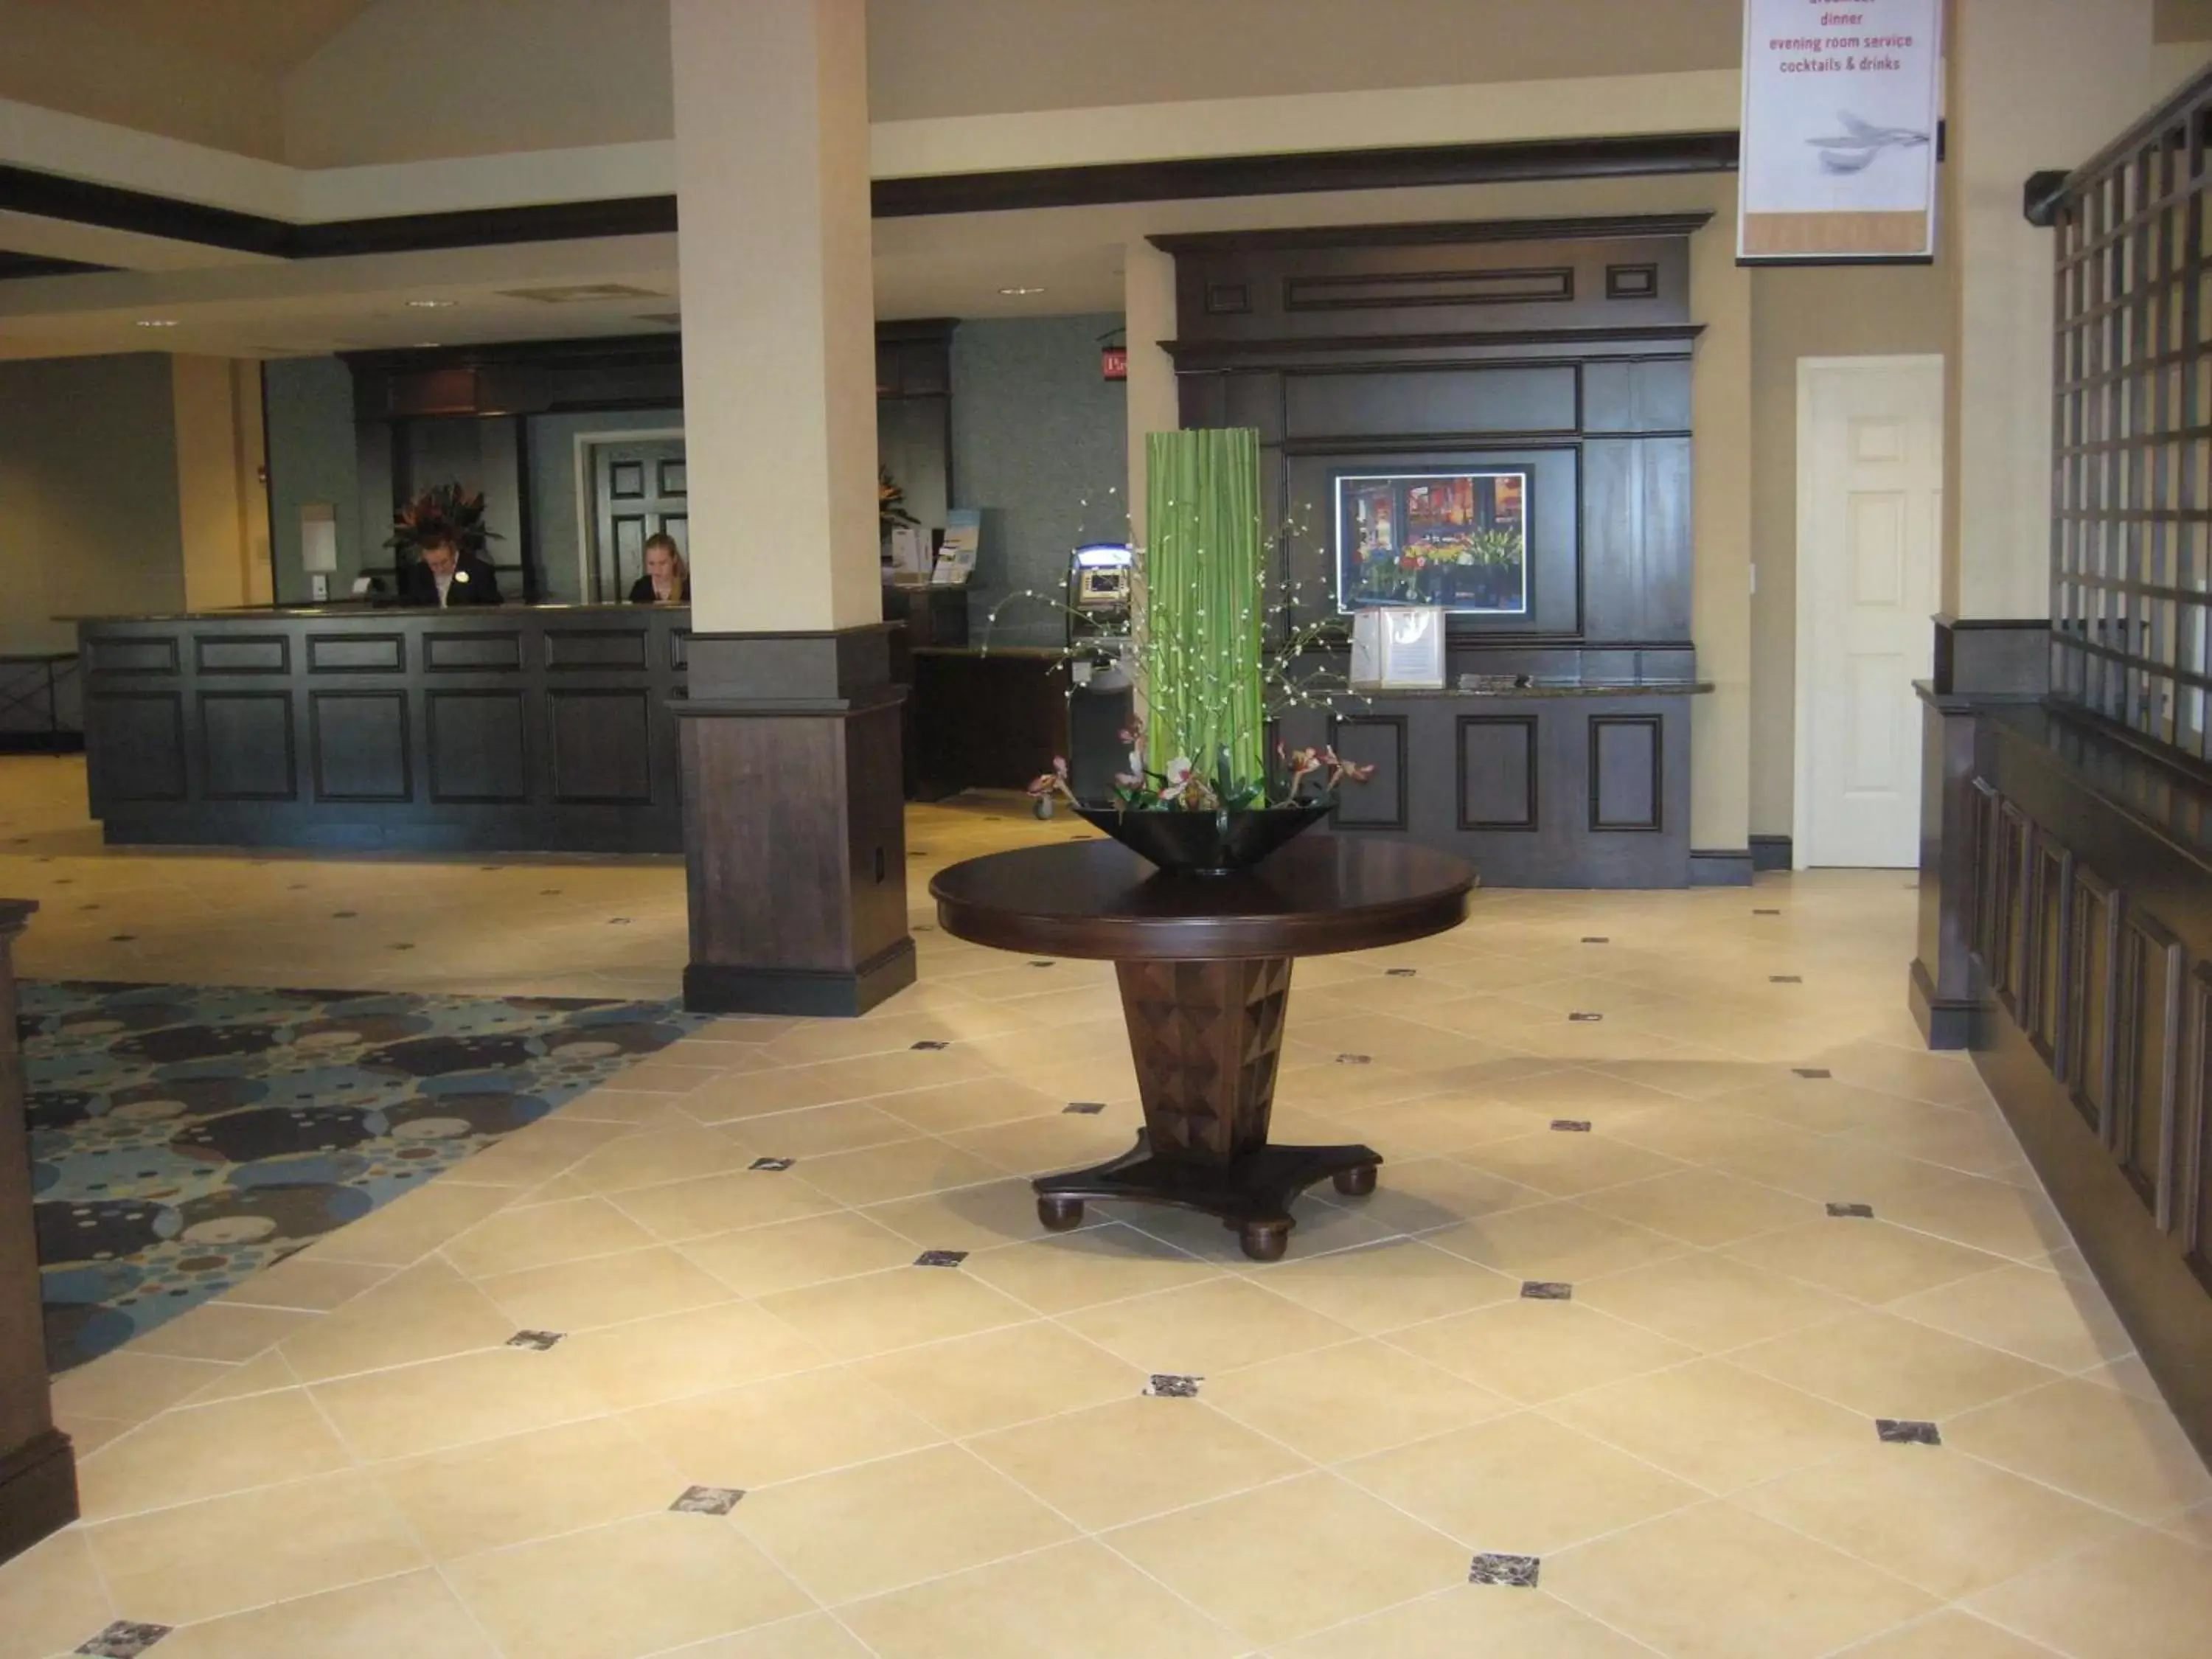 Lobby or reception, Lobby/Reception in Hilton Garden Inn Omaha East/Council Bluffs